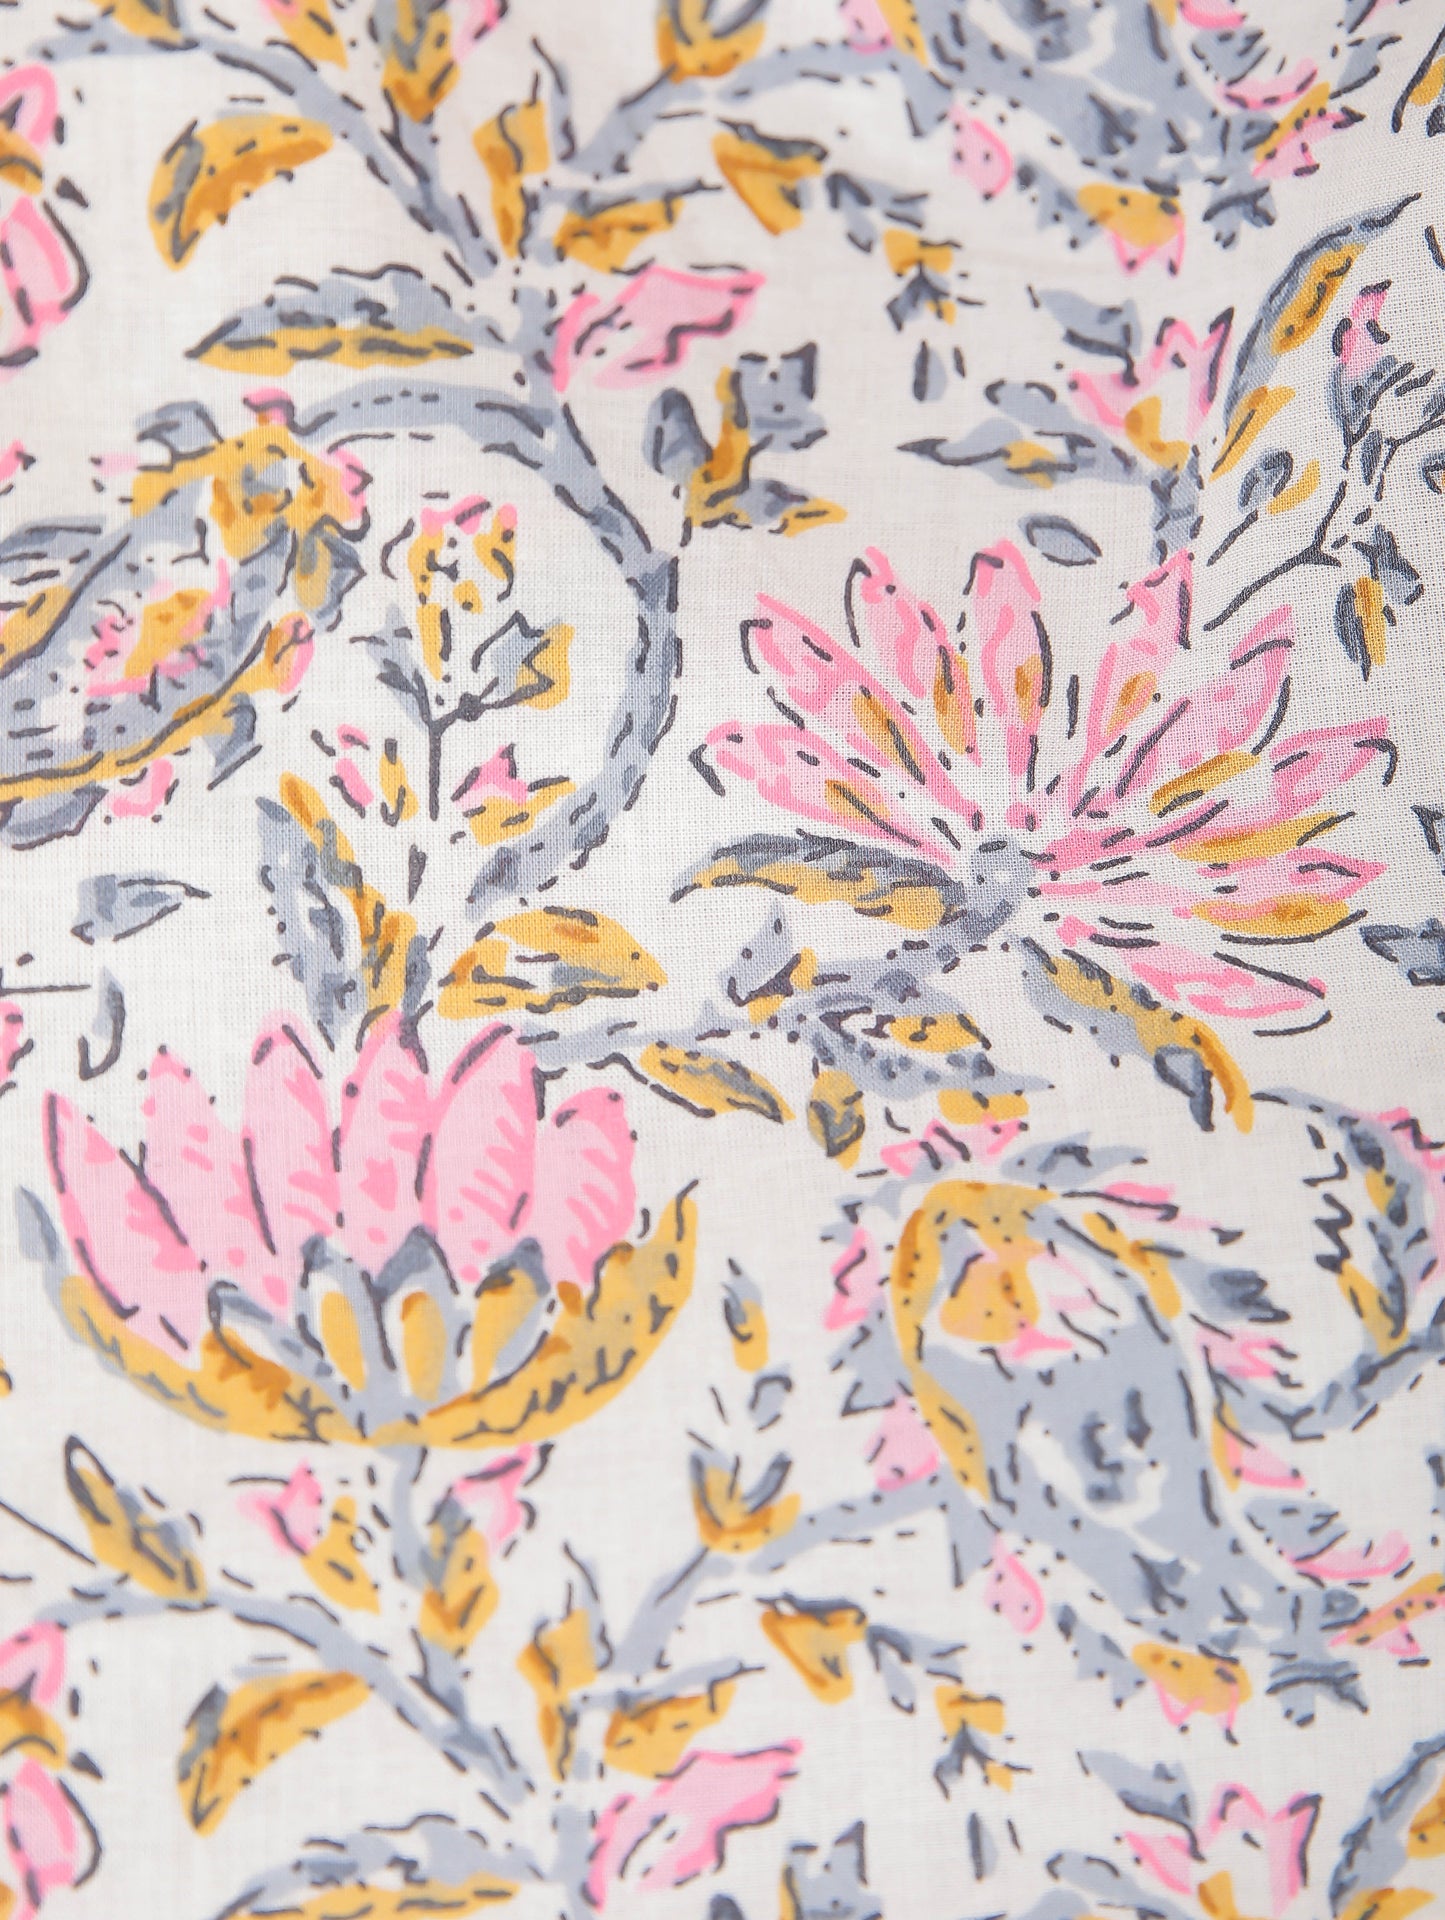 Floral Pink Print on White Cotton Kaftan Top Pant Set